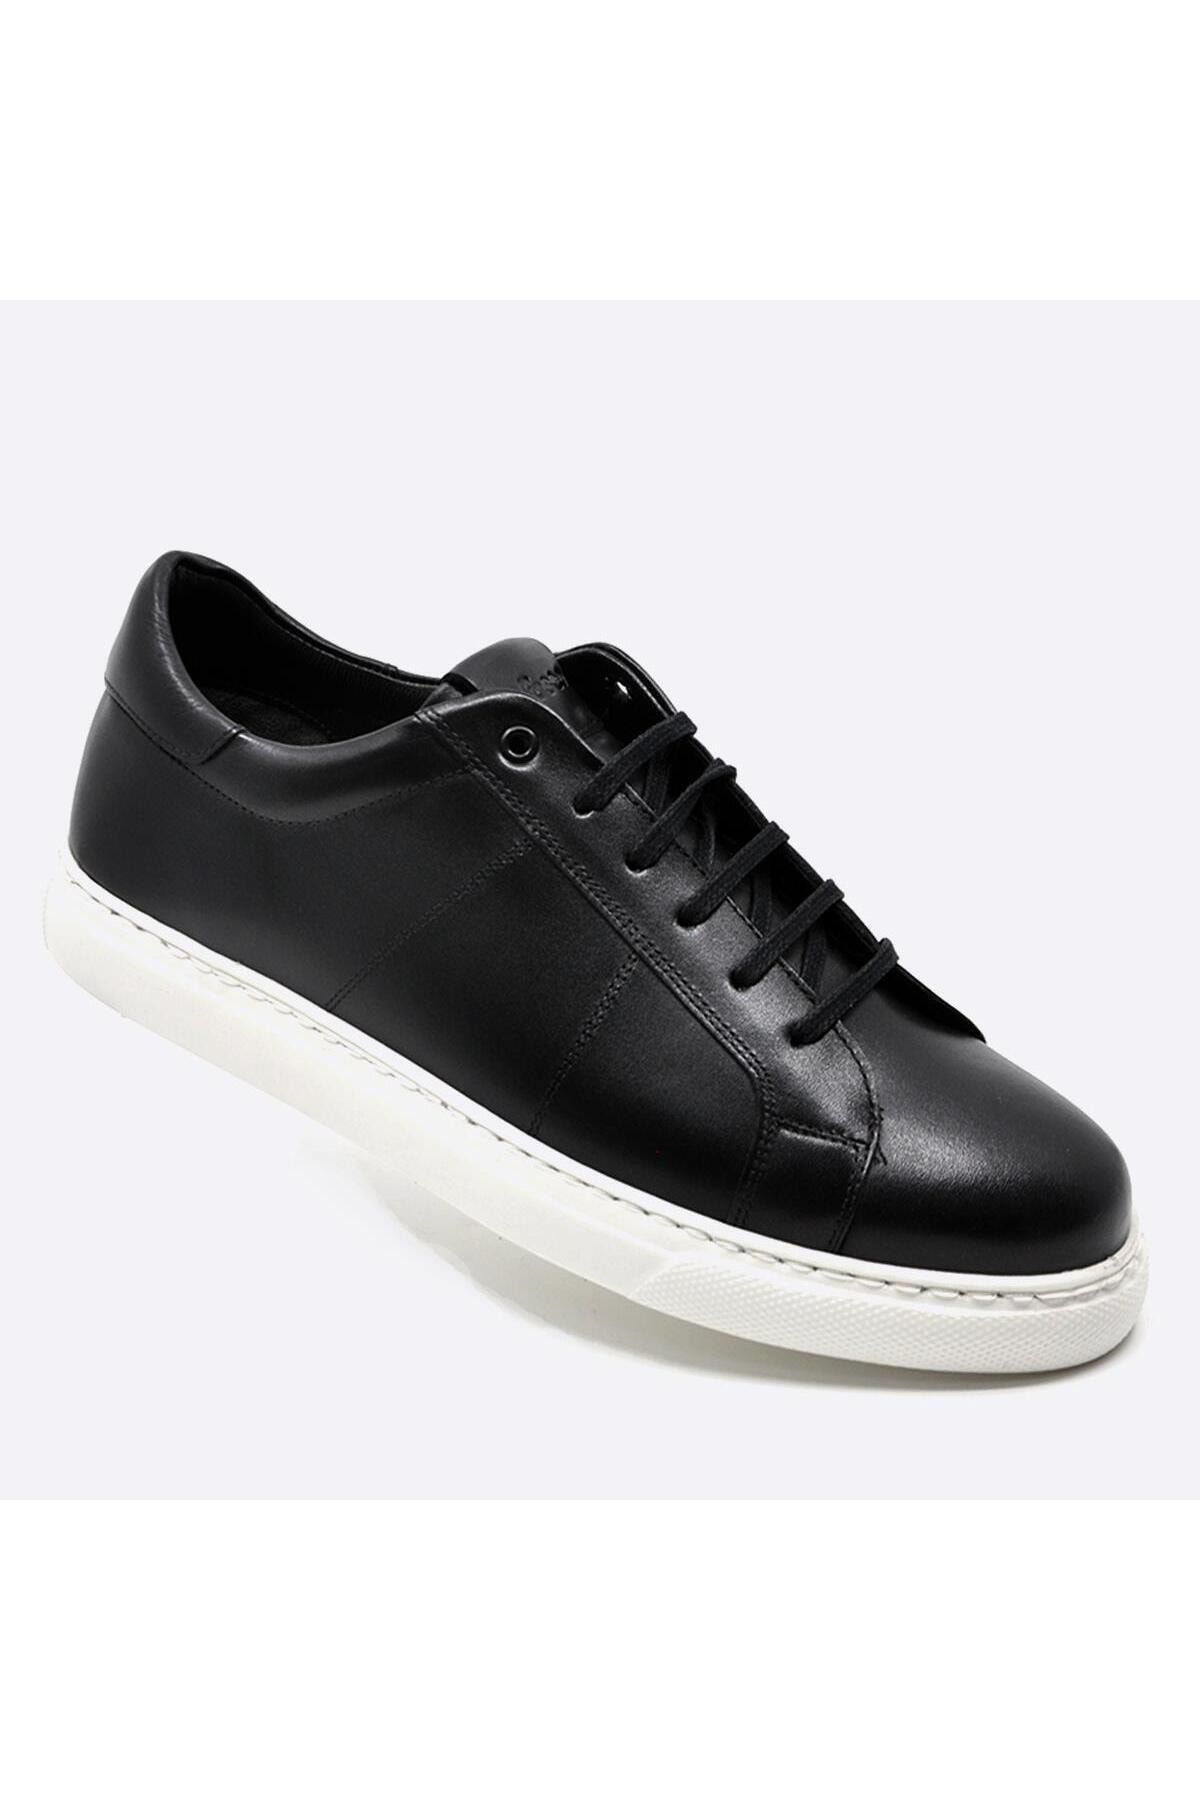 Fosco Hakiki Deri Spor Sneaker Erkek Ayakkabı Siyah 9809